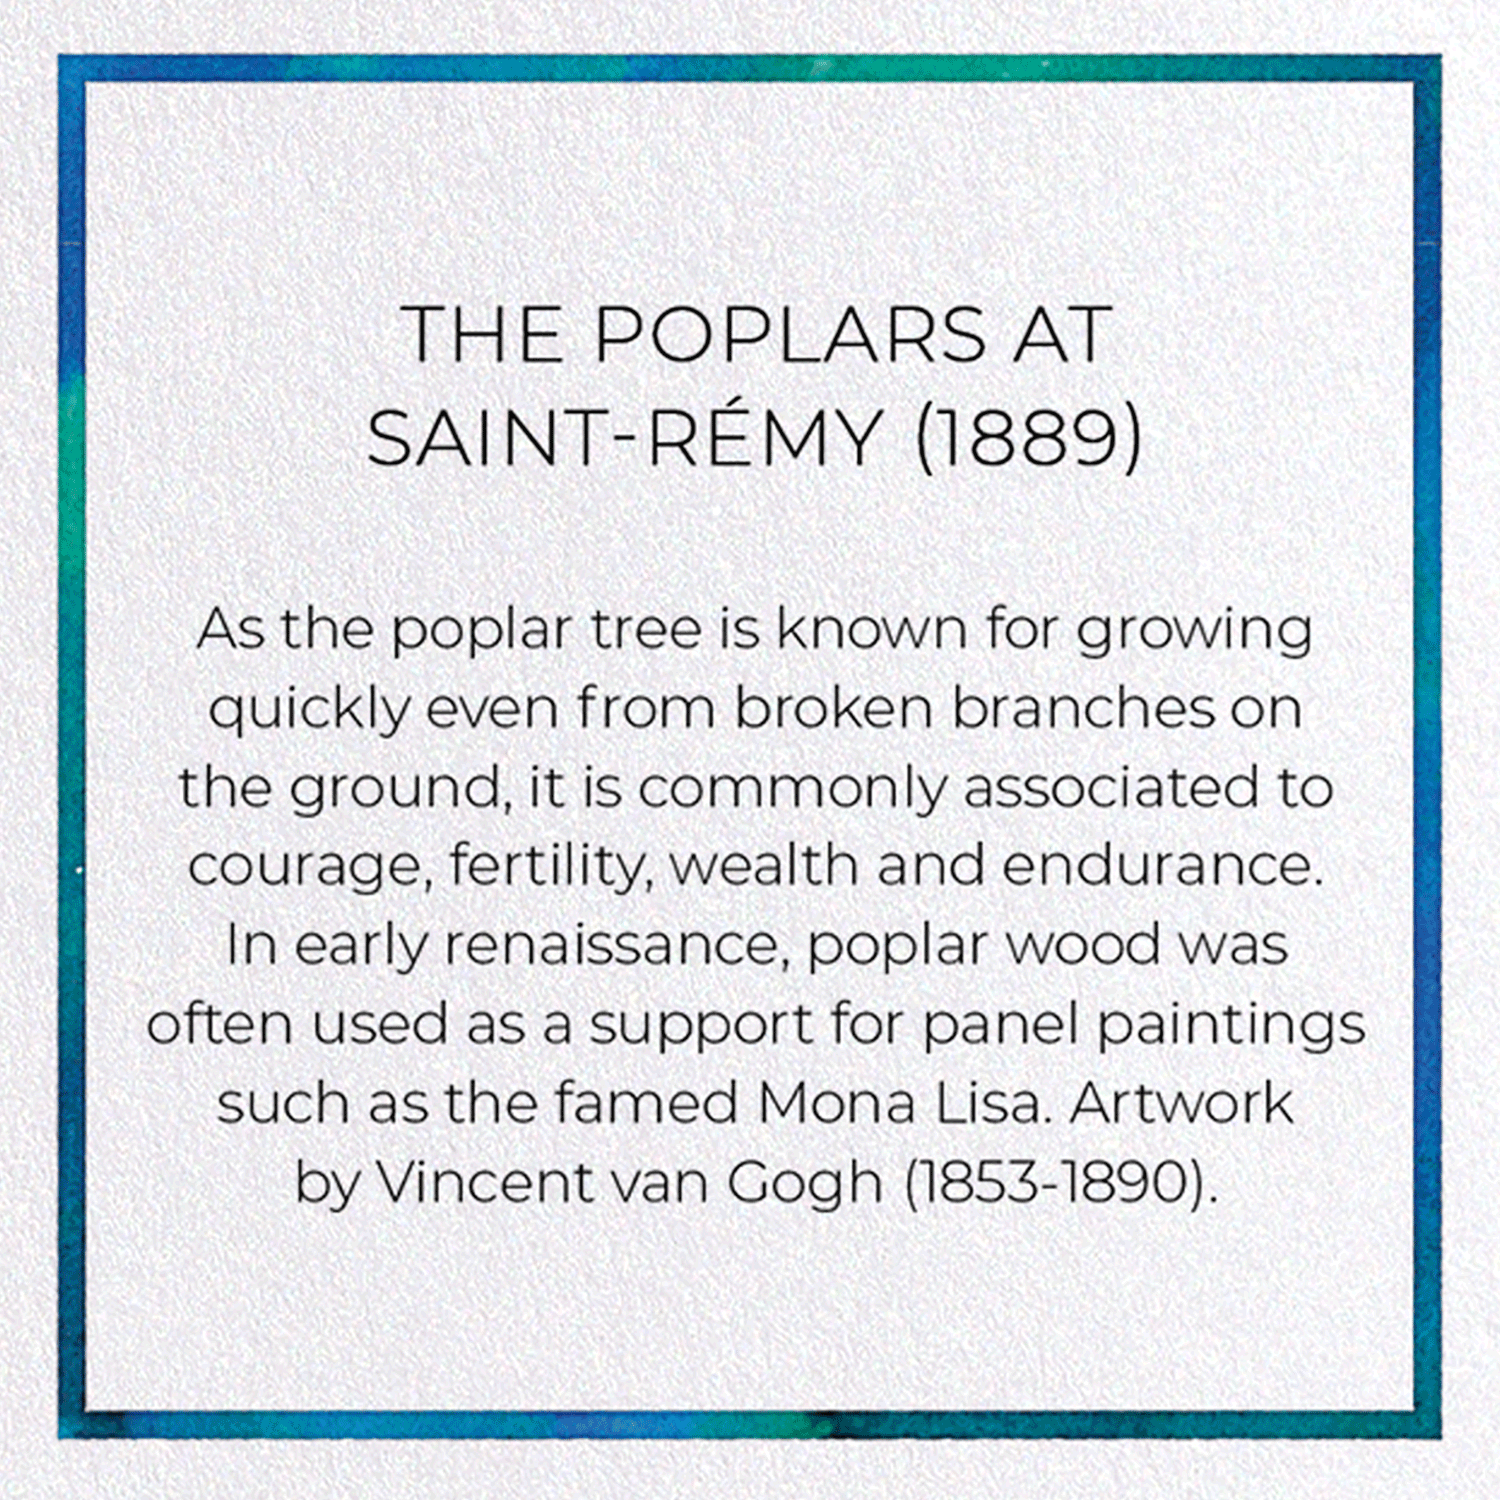 THE POPLARS AT SAINT-RÉMY (1889)